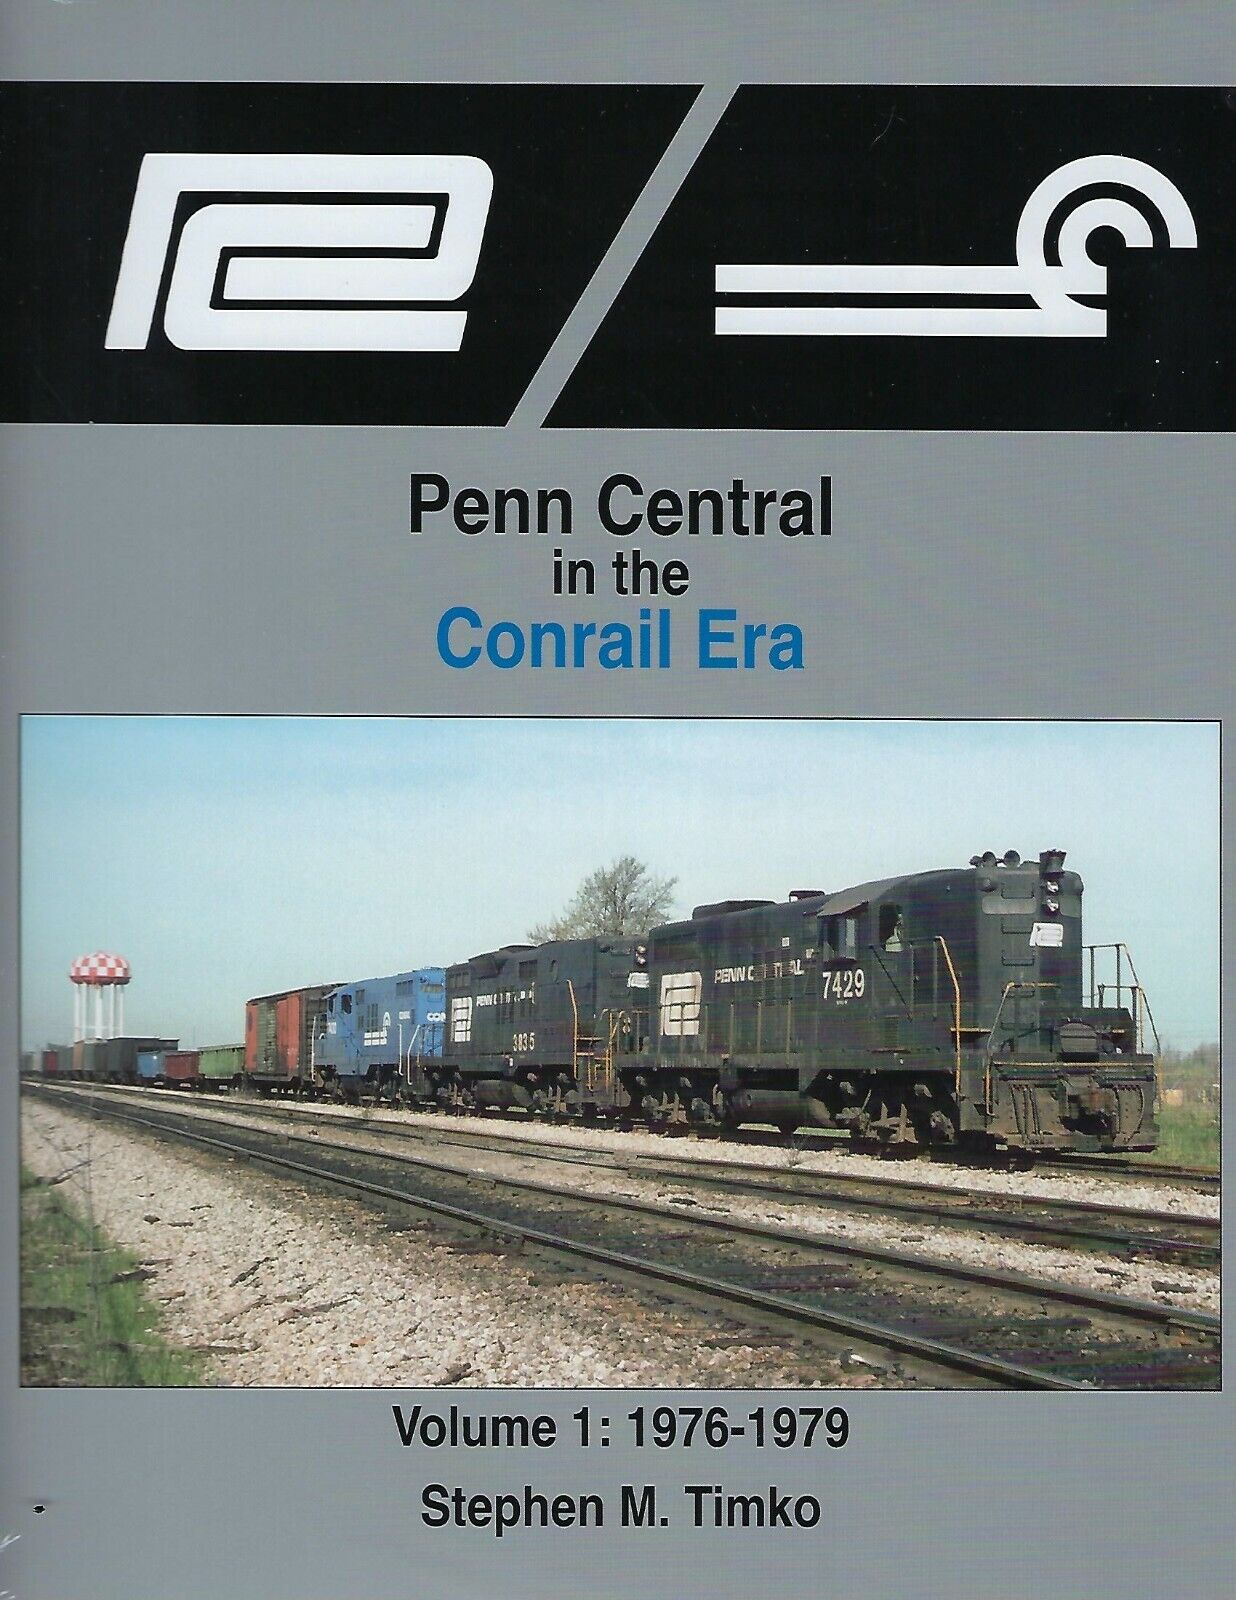 PENN CENTRAL in the CONRAIL ERA, Vol. 1, 1976-1979 - (BRAND NEW BOOK)